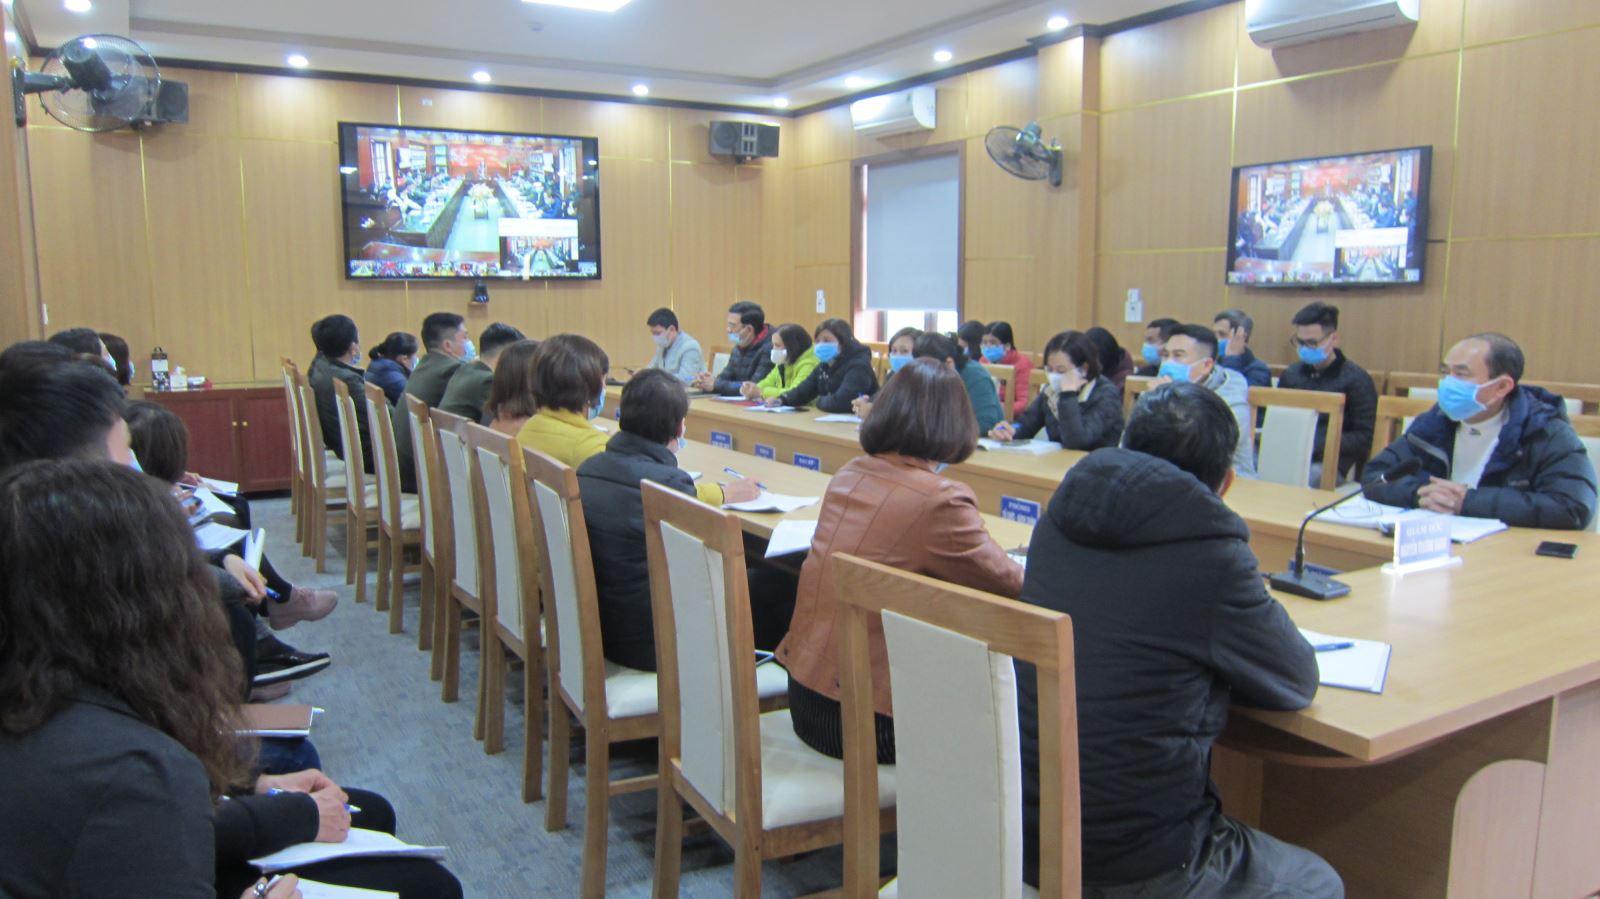 Điểm cầu Trung tâm Y tế thành phố Yên Bái tham dự  tập huấn trực tuyến triển khai phần mềm giám sát Covid - 19